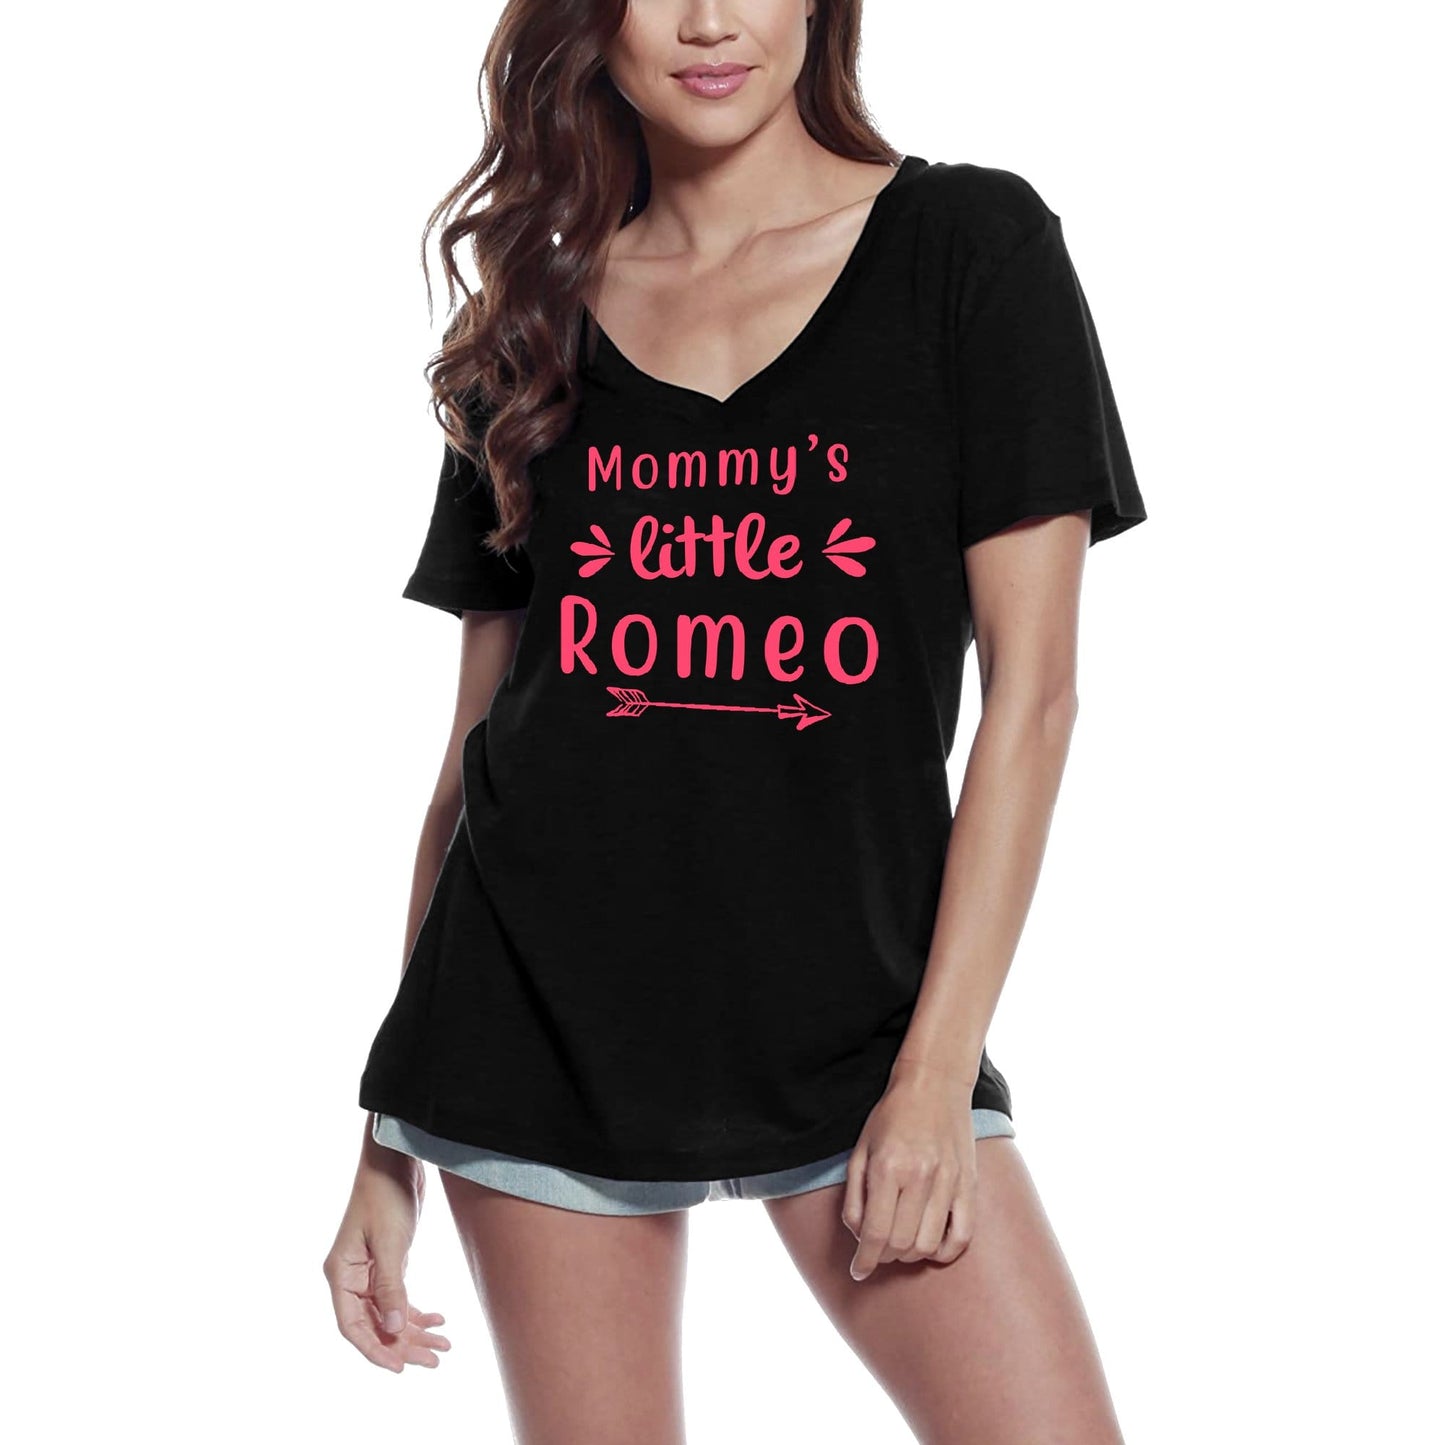 ULTRABASIC Women's T-Shirt Mommy's Little Romeo - Short Sleeve Tee Shirt Gift Tops